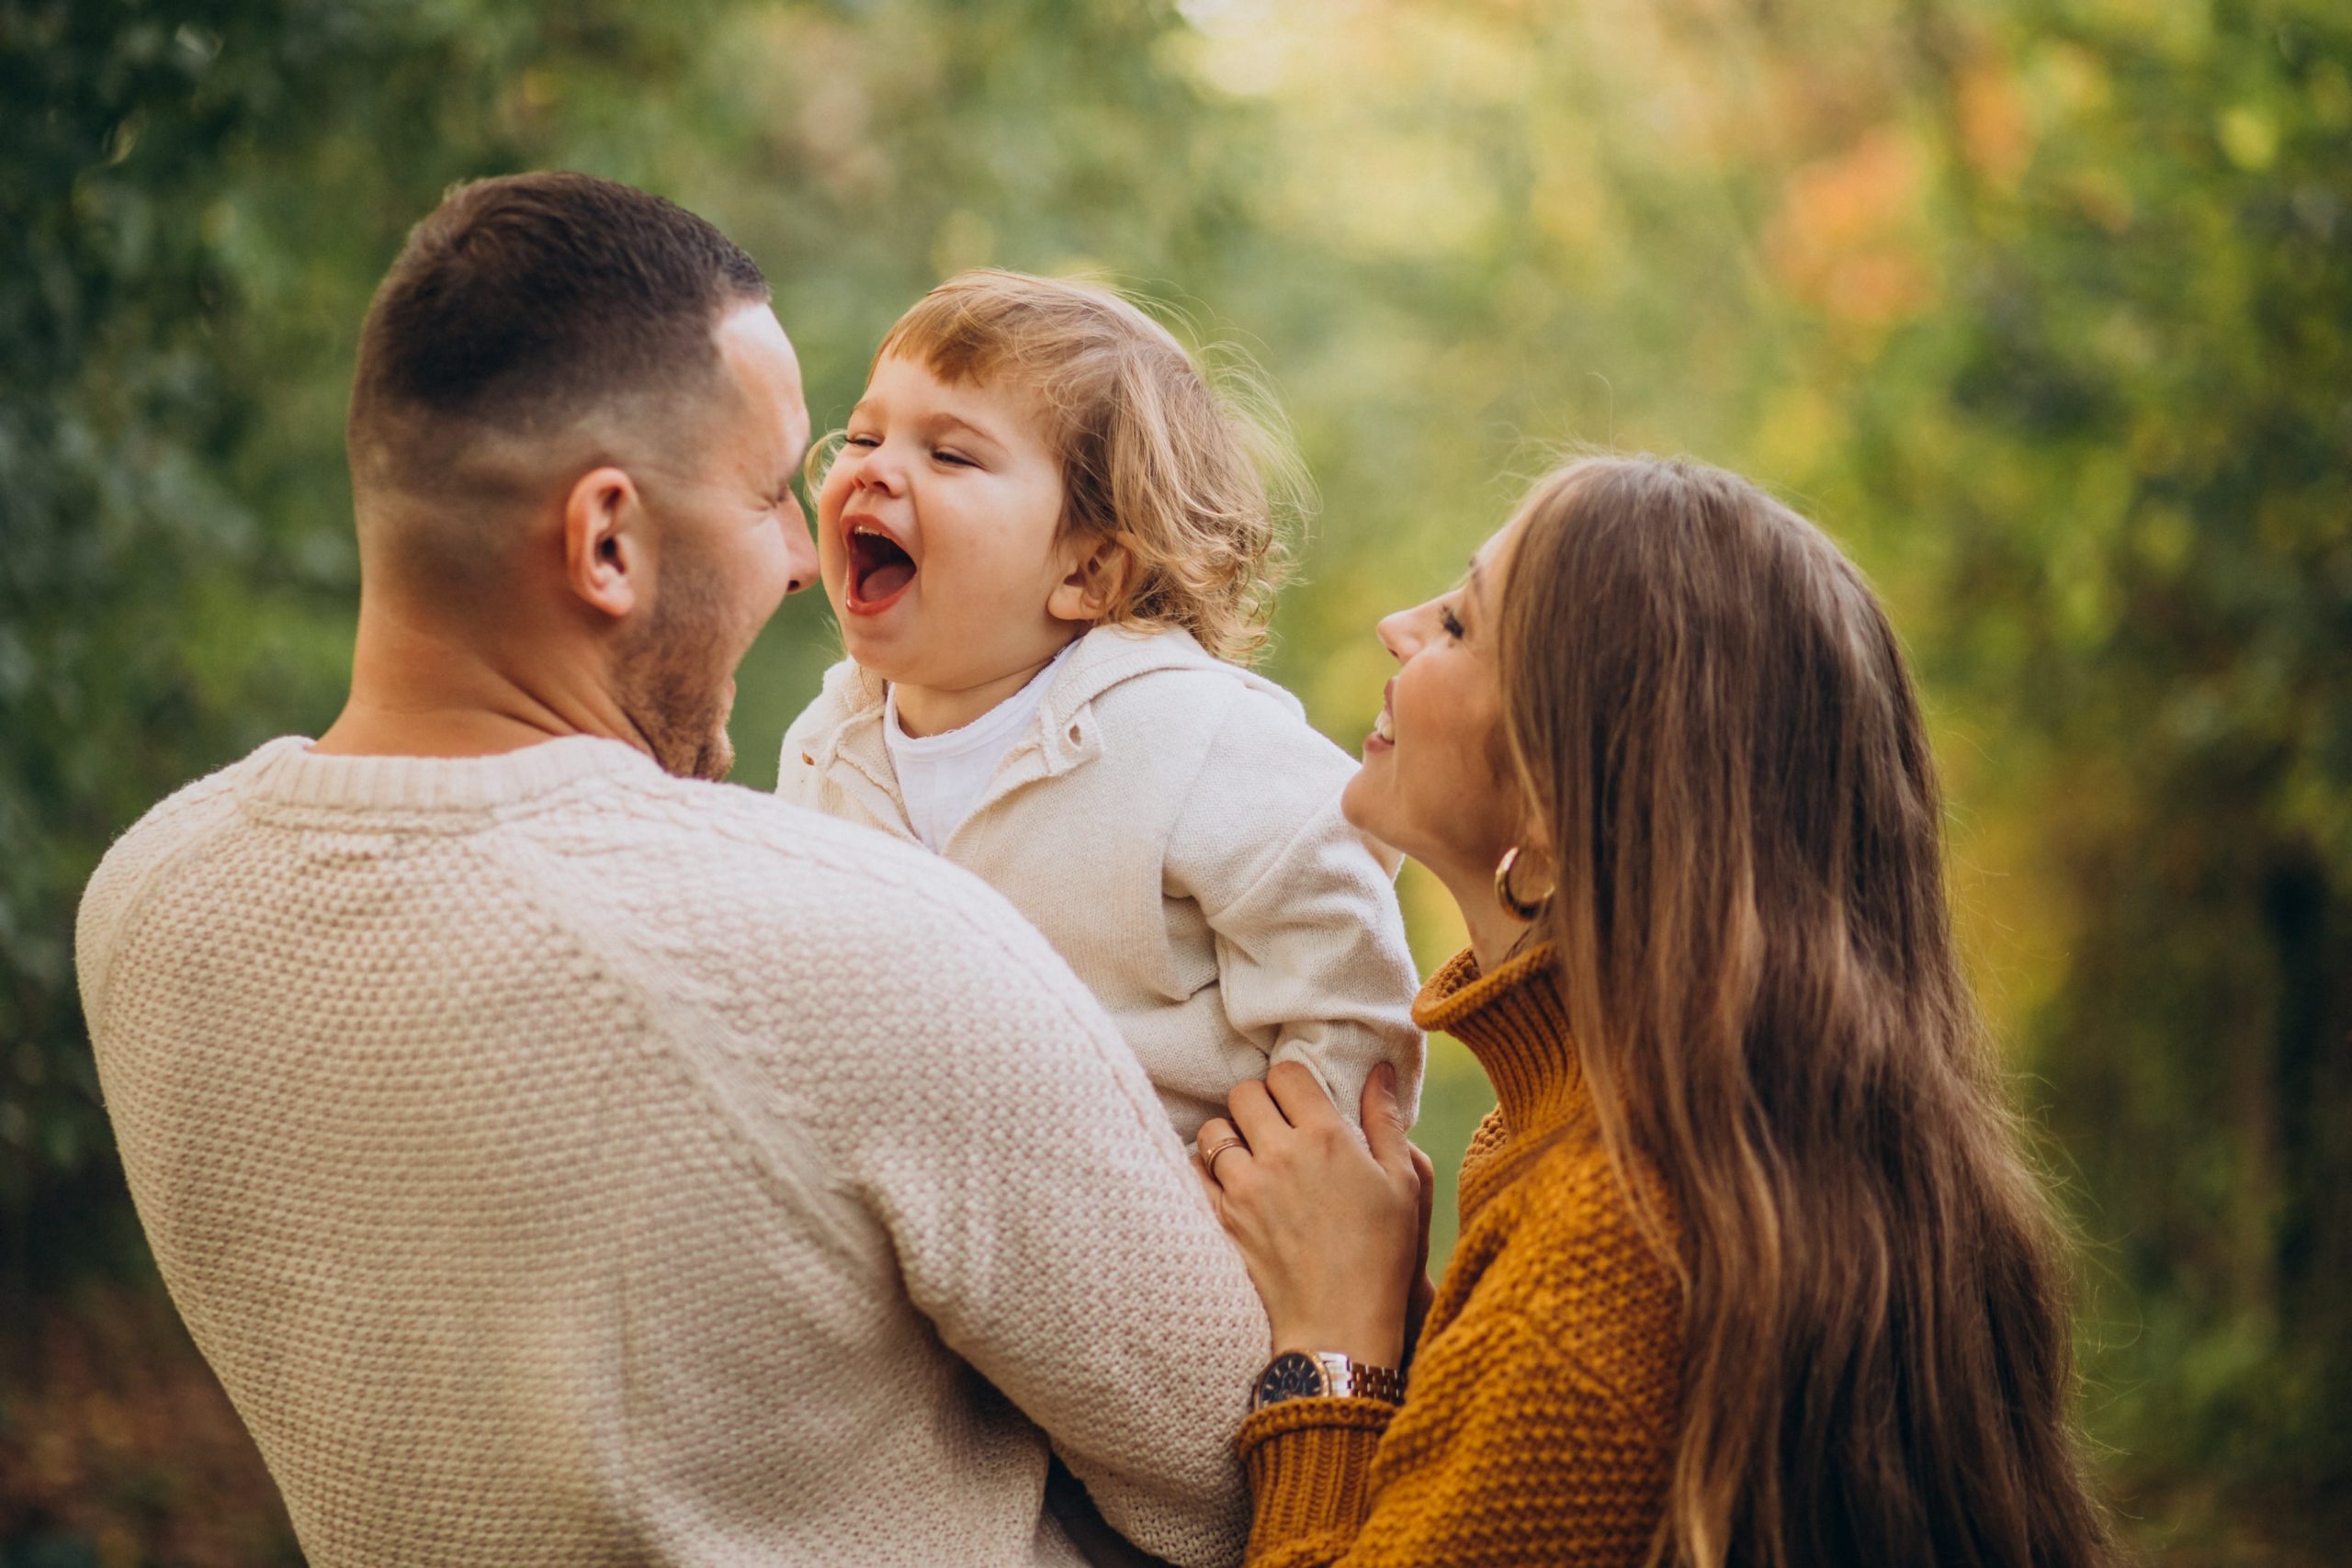 Bild von freepik zeigt eine glückliche Familie bestehend aus Vater, Kind und Mutter, dieses Gefühl möchte therapinum vermitteln